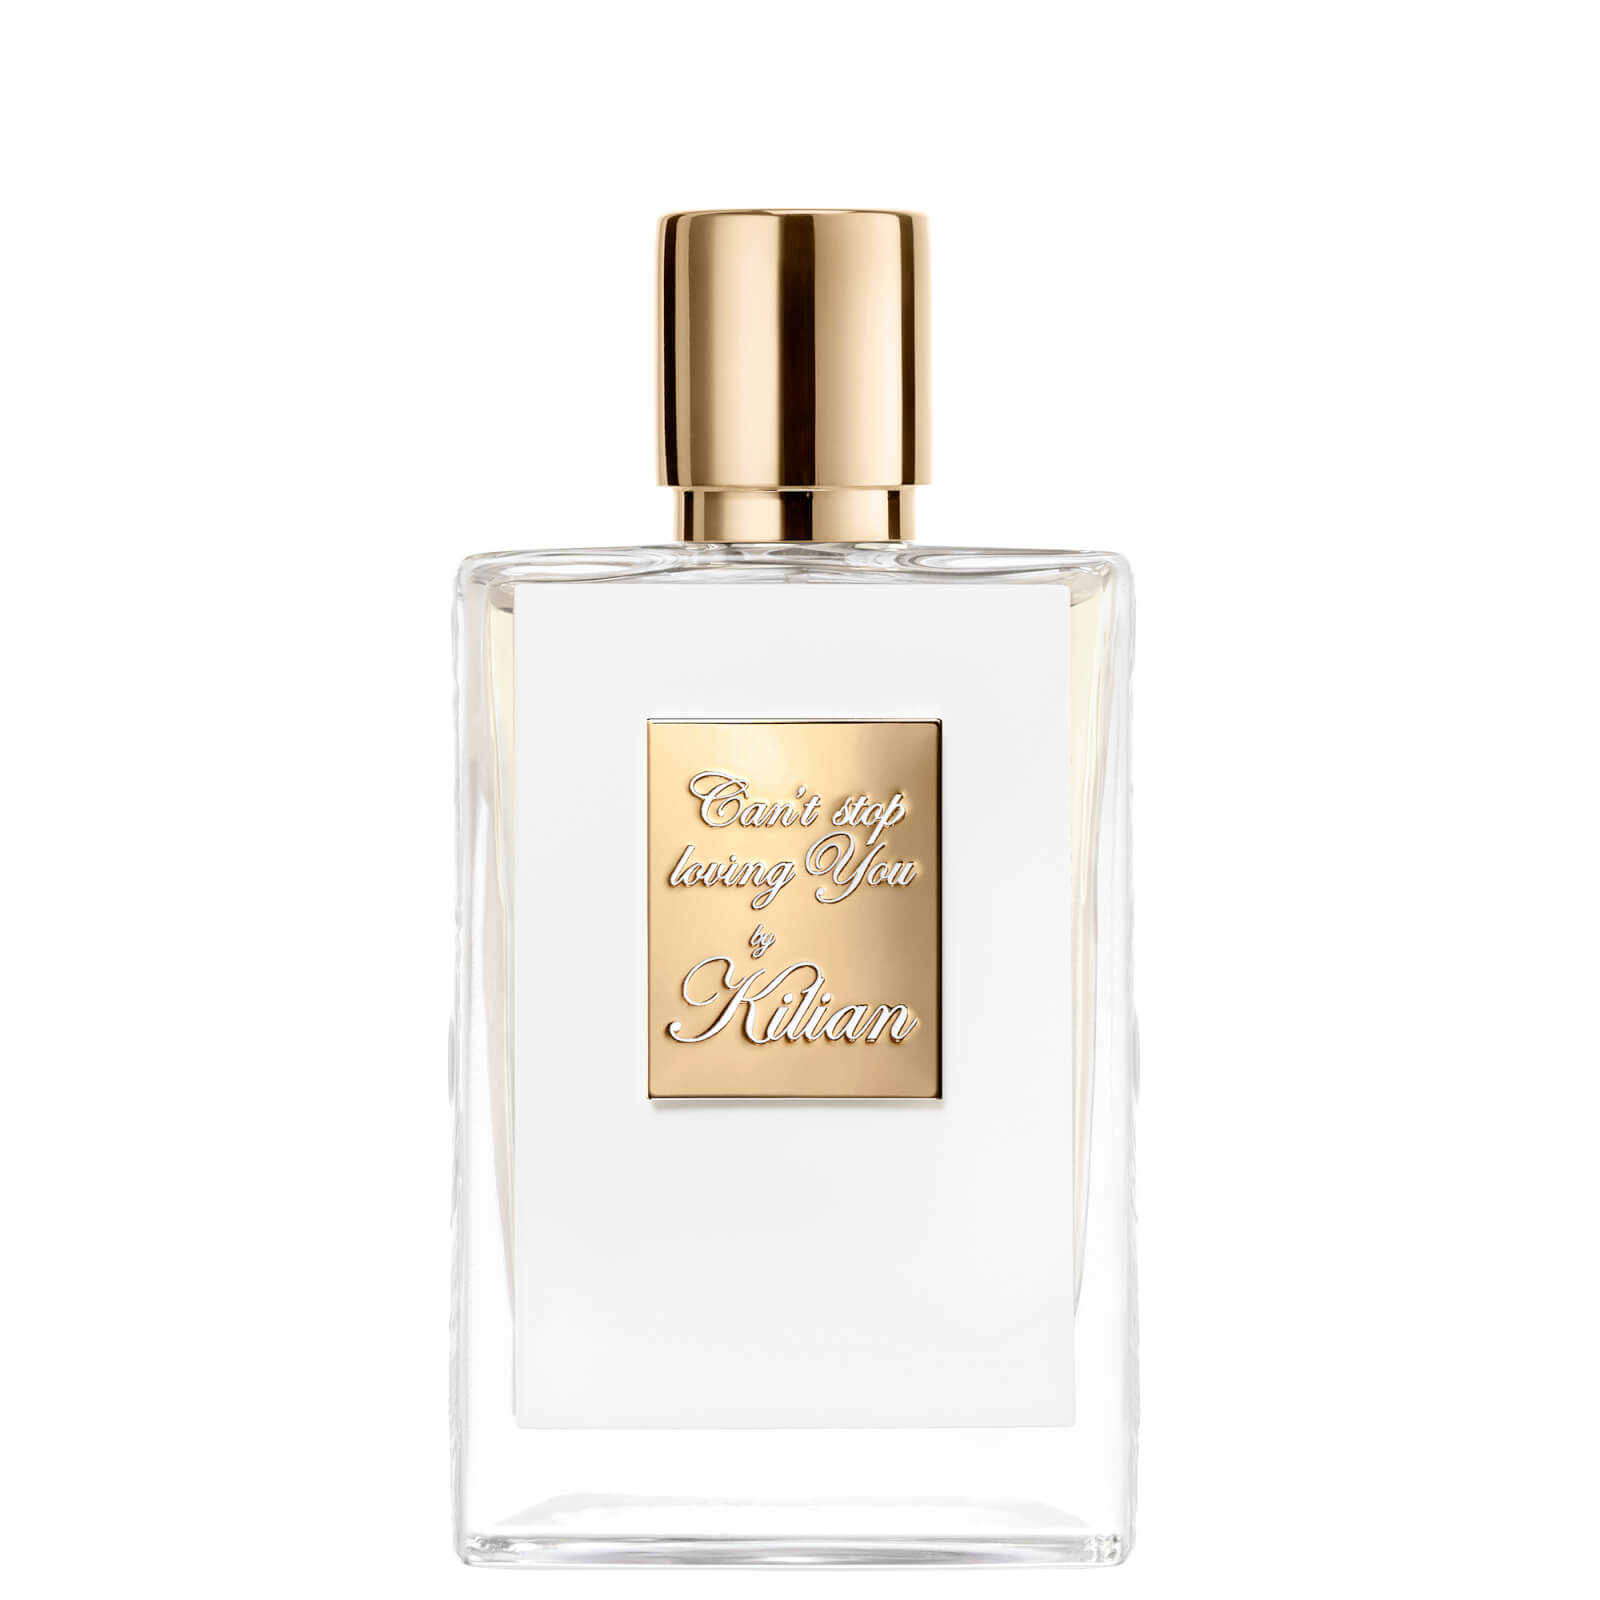 Photos - Women's Fragrance Kilian Can't Stop Loving You Eau de Parfum 50ml 